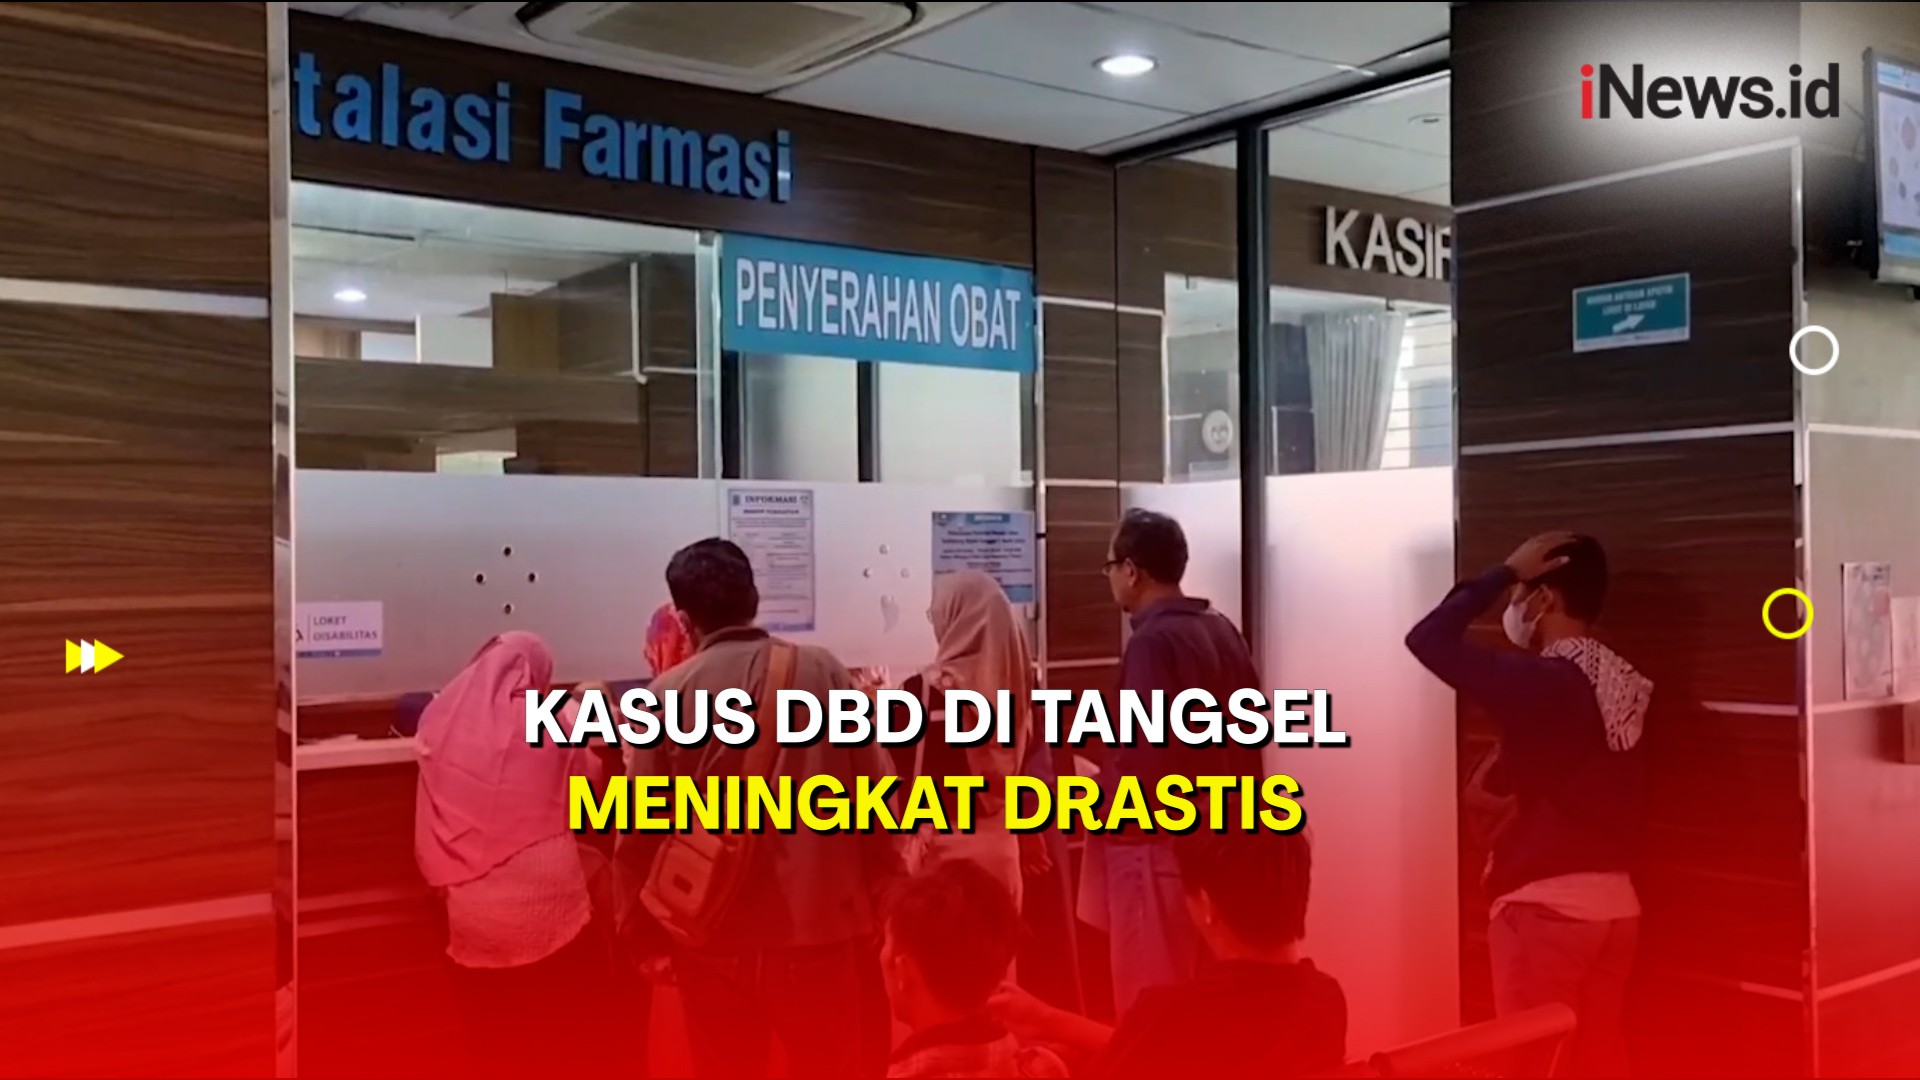 Kasus DBD di Tangerang Selatan Meningkat Drastis hingga 130 Persen 